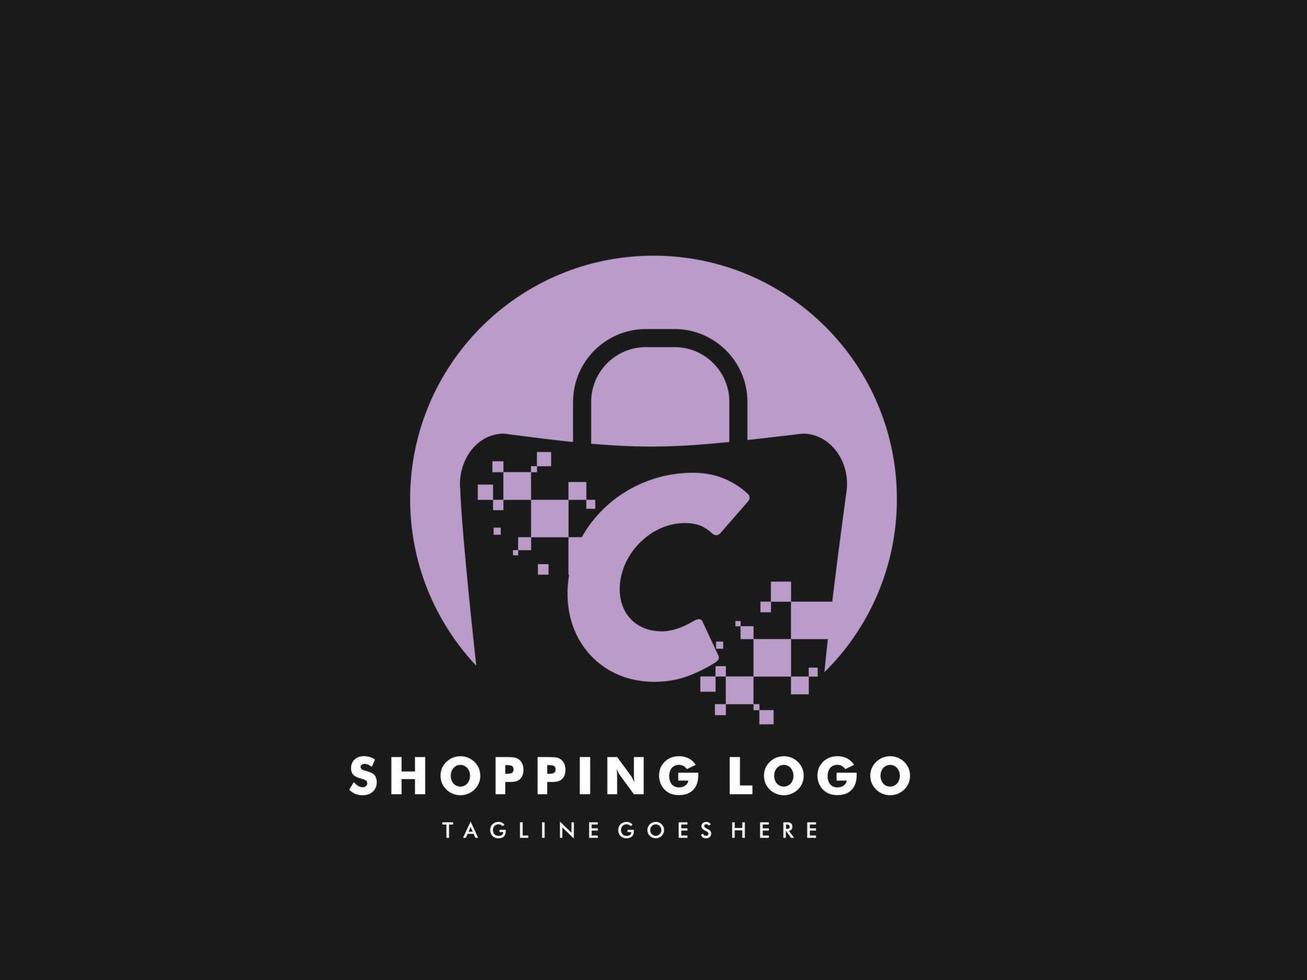 Vektor-Einkaufstasche isolierter Kreis mit Buchstaben c, Symbol für schnelles Einkaufen, kreativer Schnellladen, kreative Logo-Vorlagen für schnelles Einkaufen. vektor